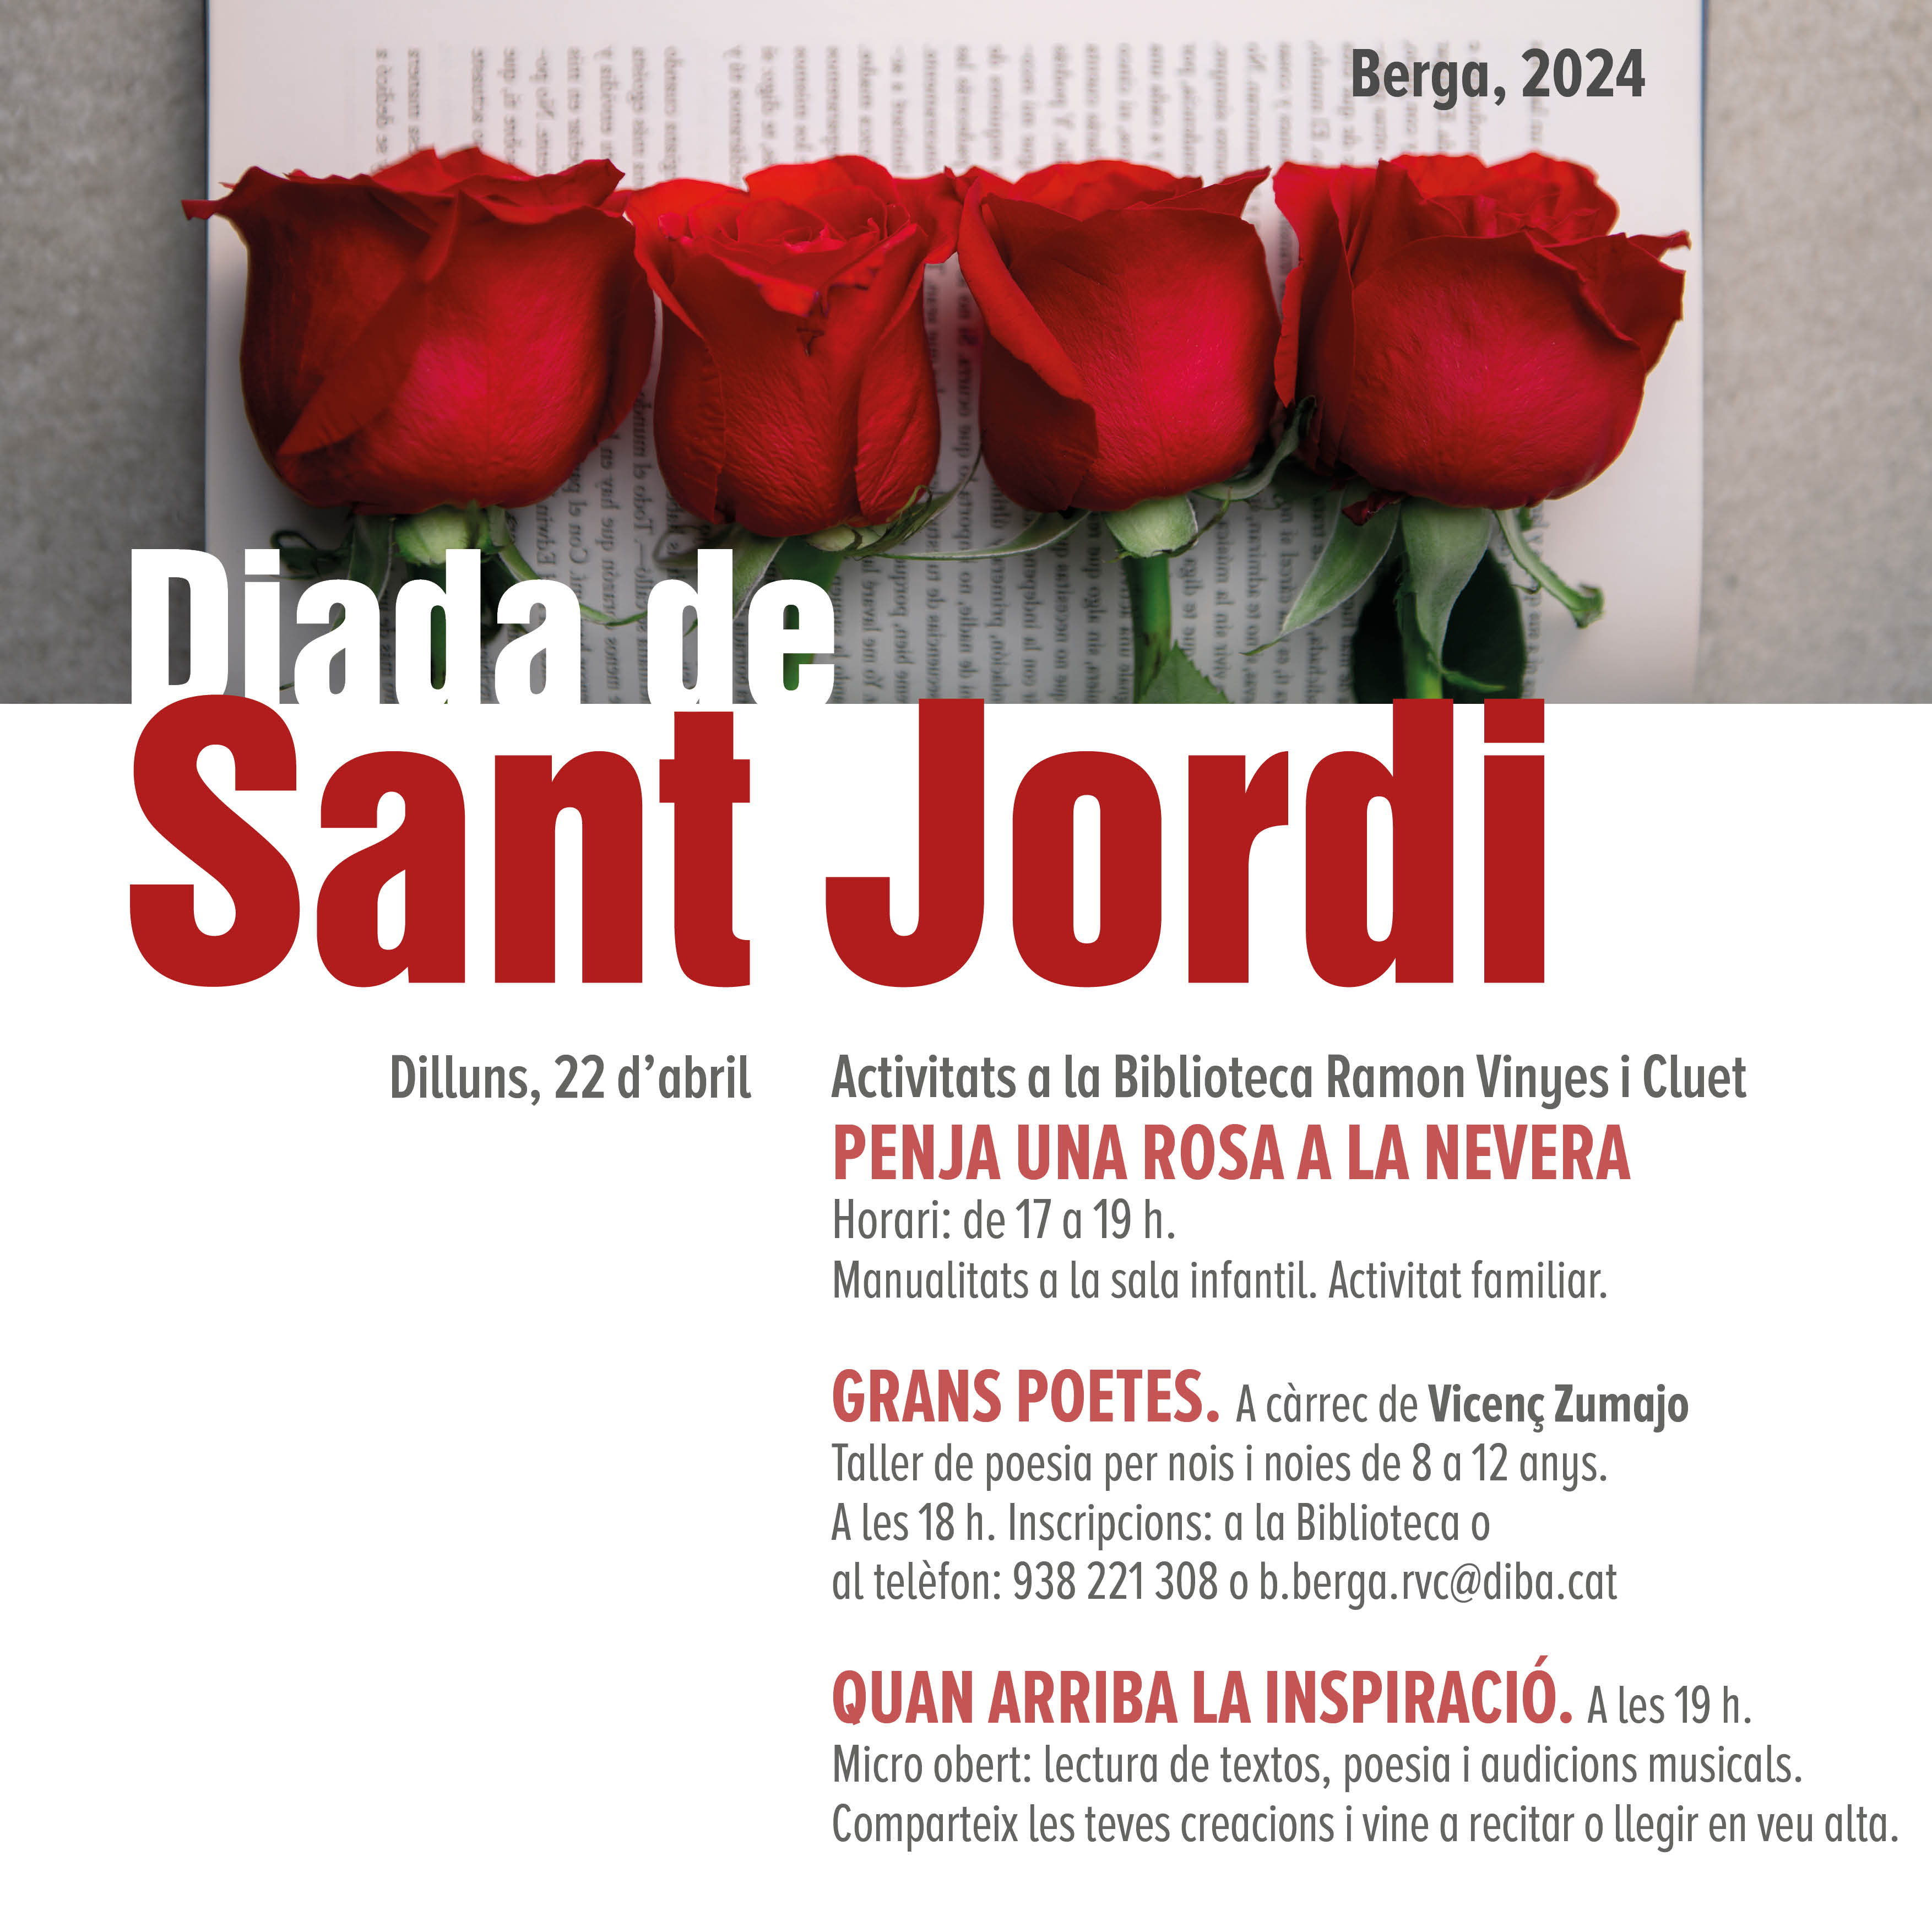 Diada de Sant Jordi: activitats a la Biblioteca Ramon Vinyes i Cluet